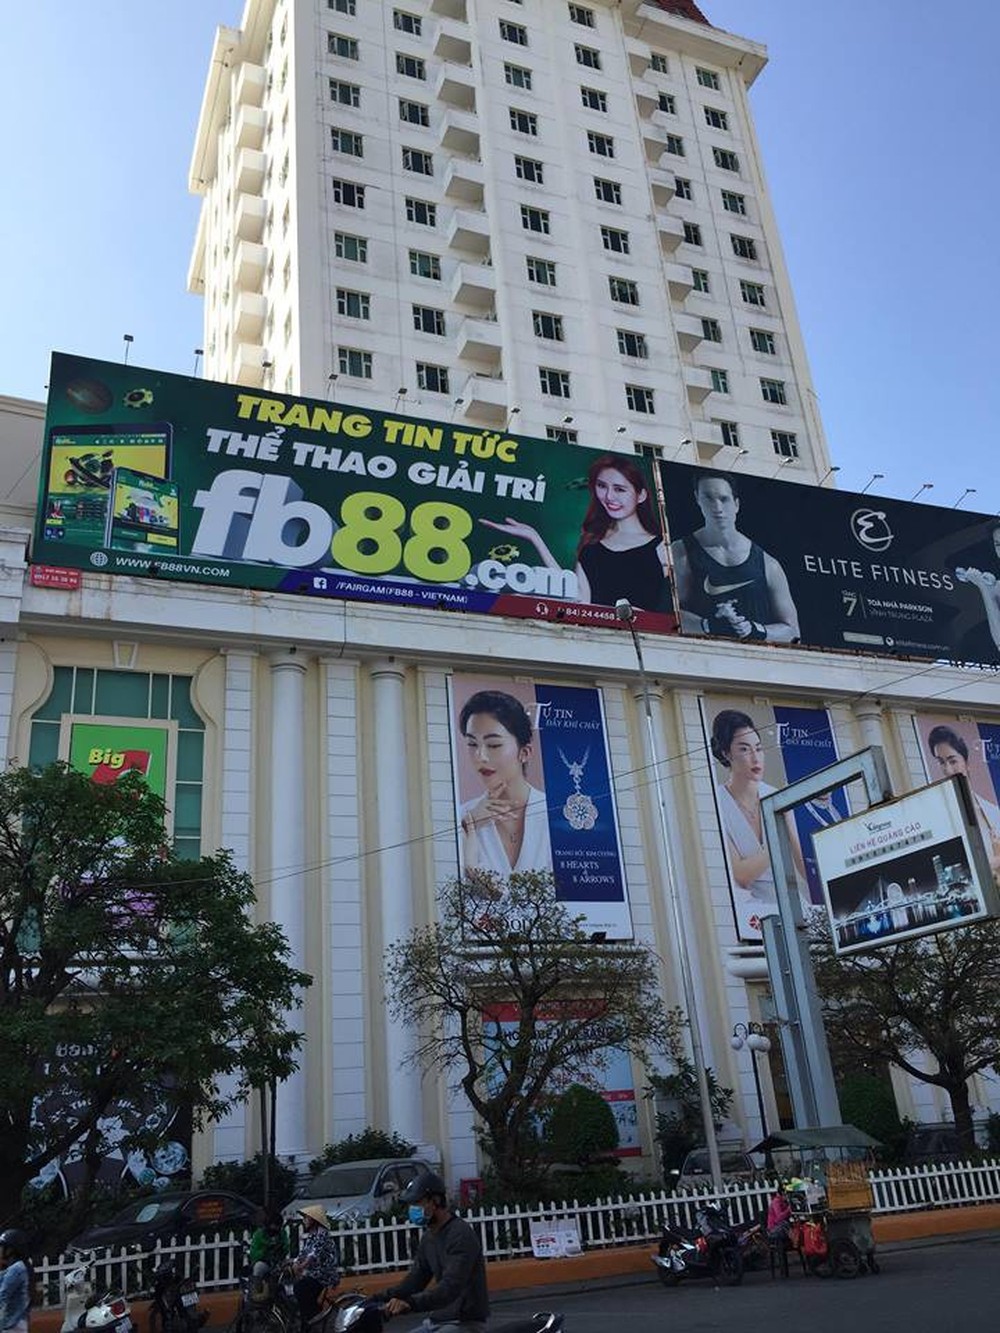 Treo pano quảng cáo cho website đánh bạc, cá cược trực tuyến ở trung tâm Đà Nẵng - Ảnh 1.